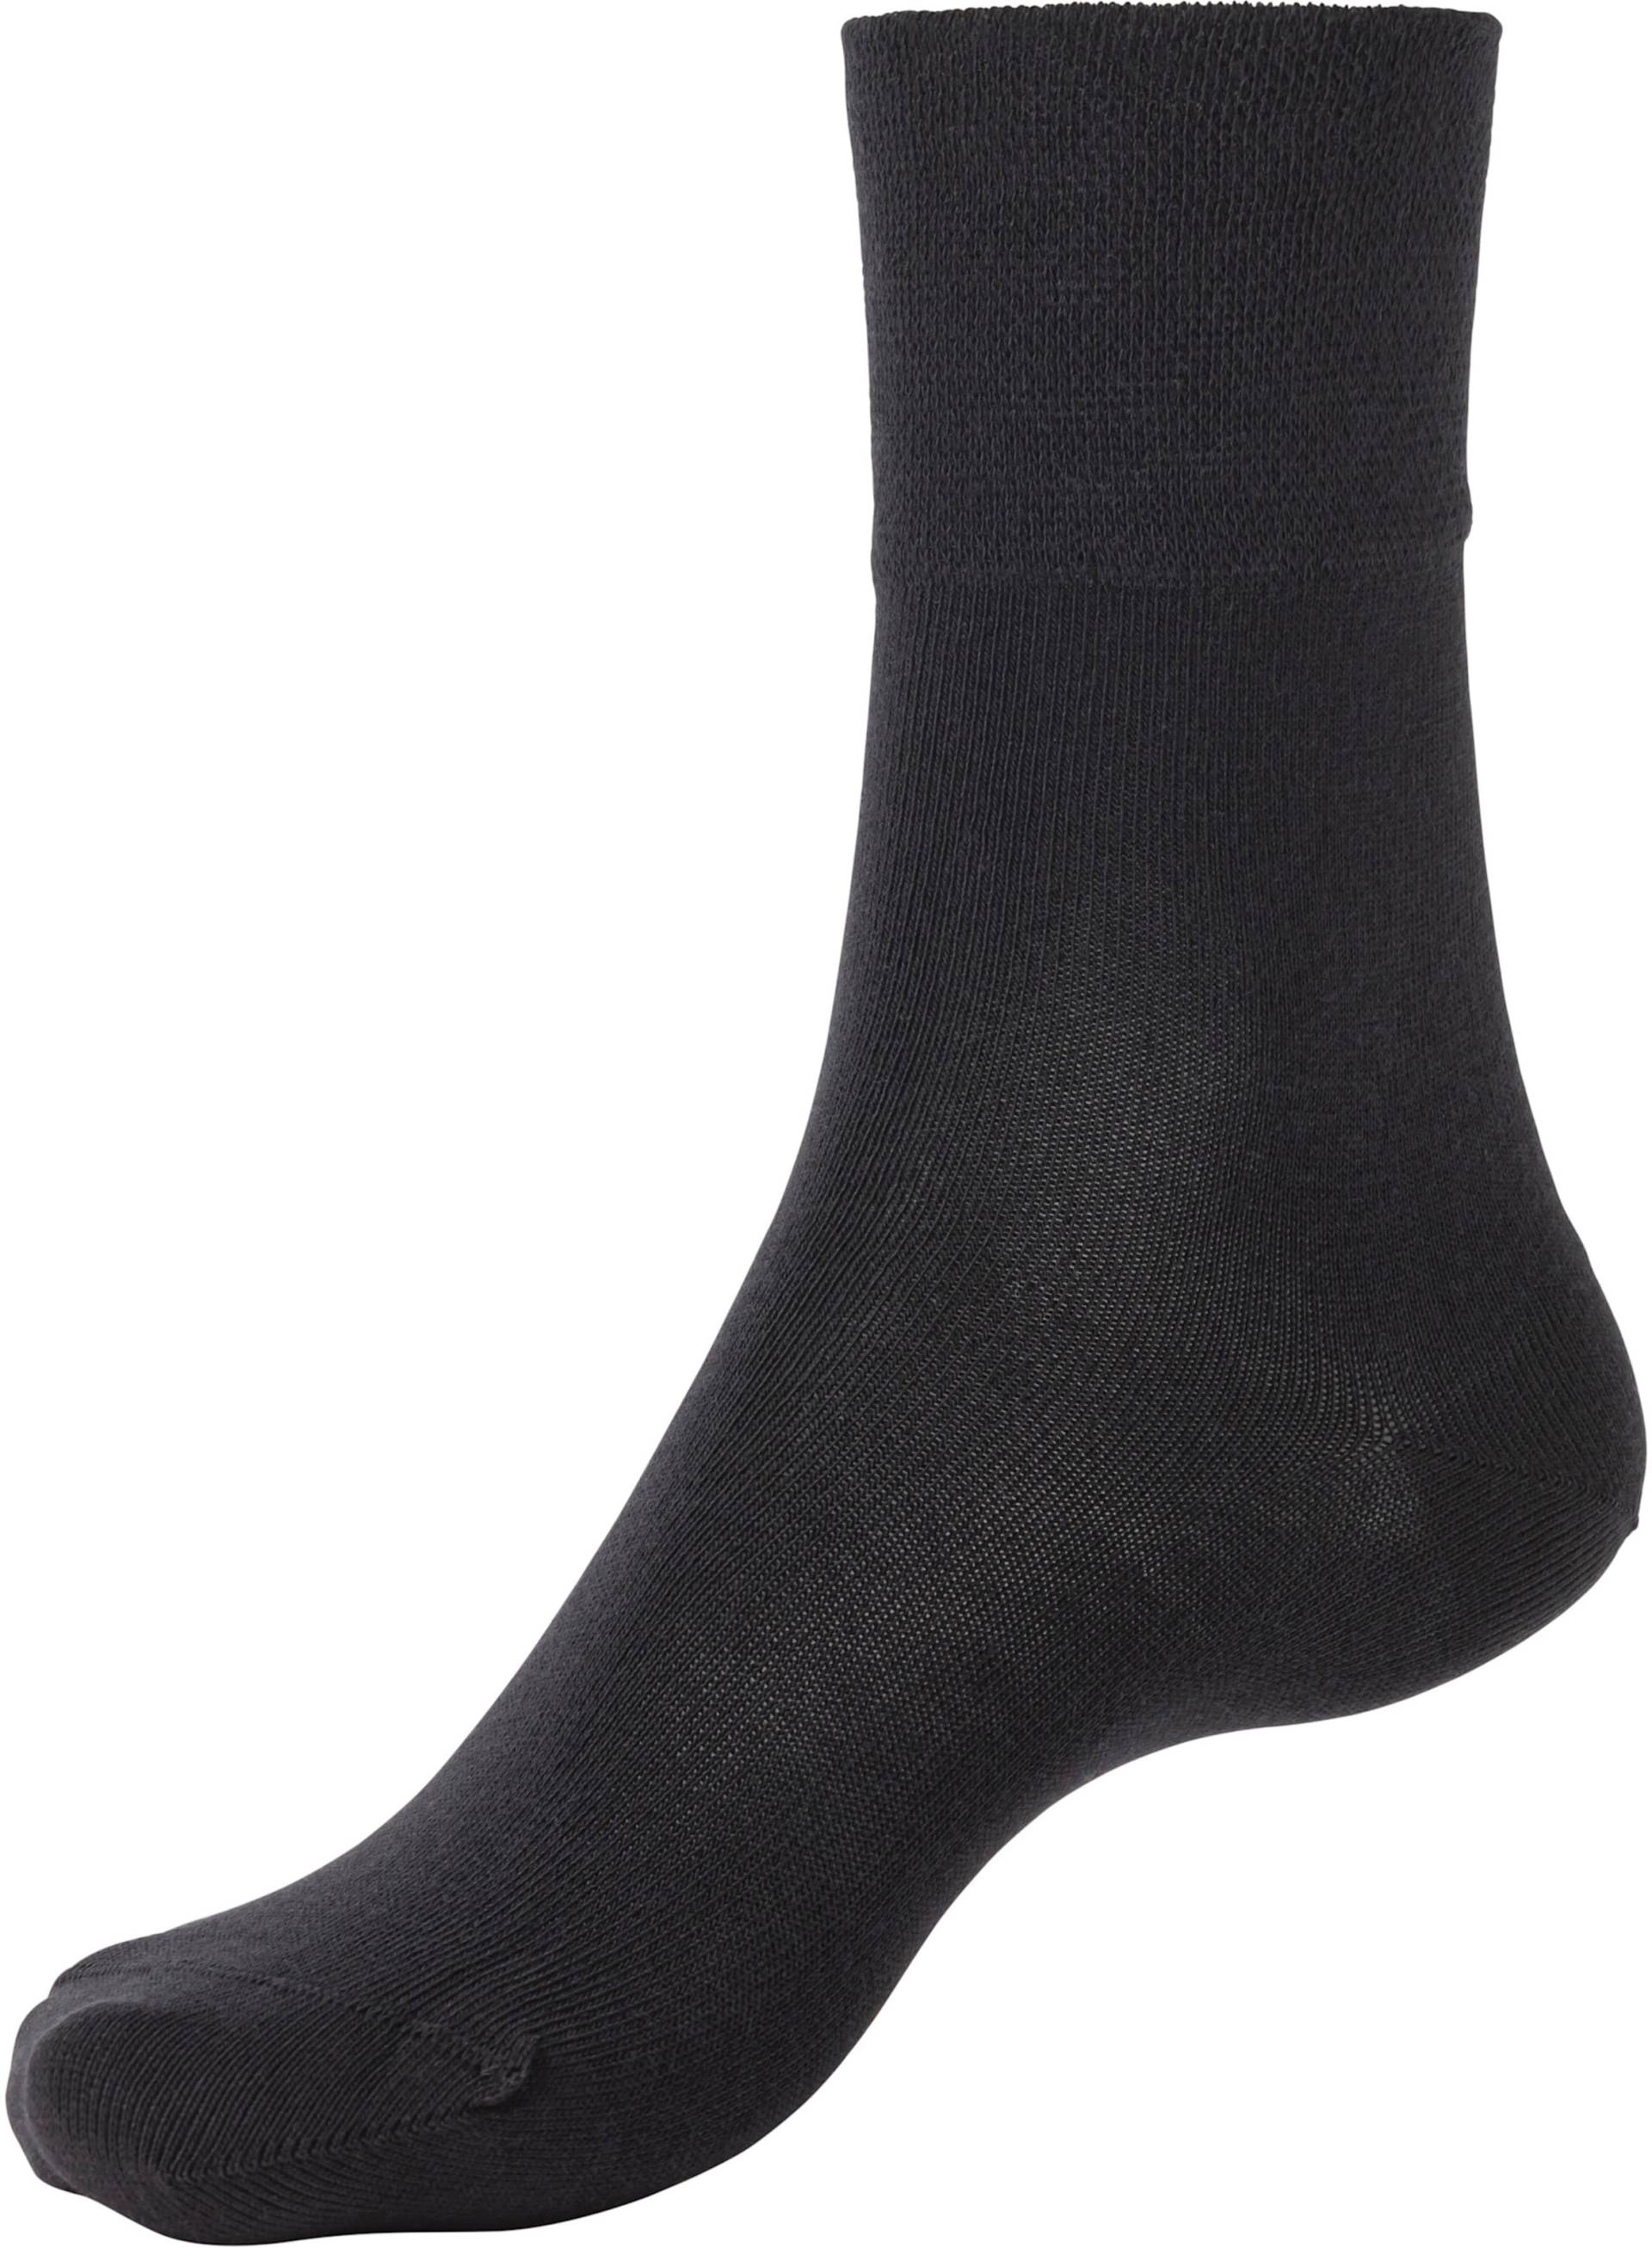 Socken in 6x schwarz von H.I.S